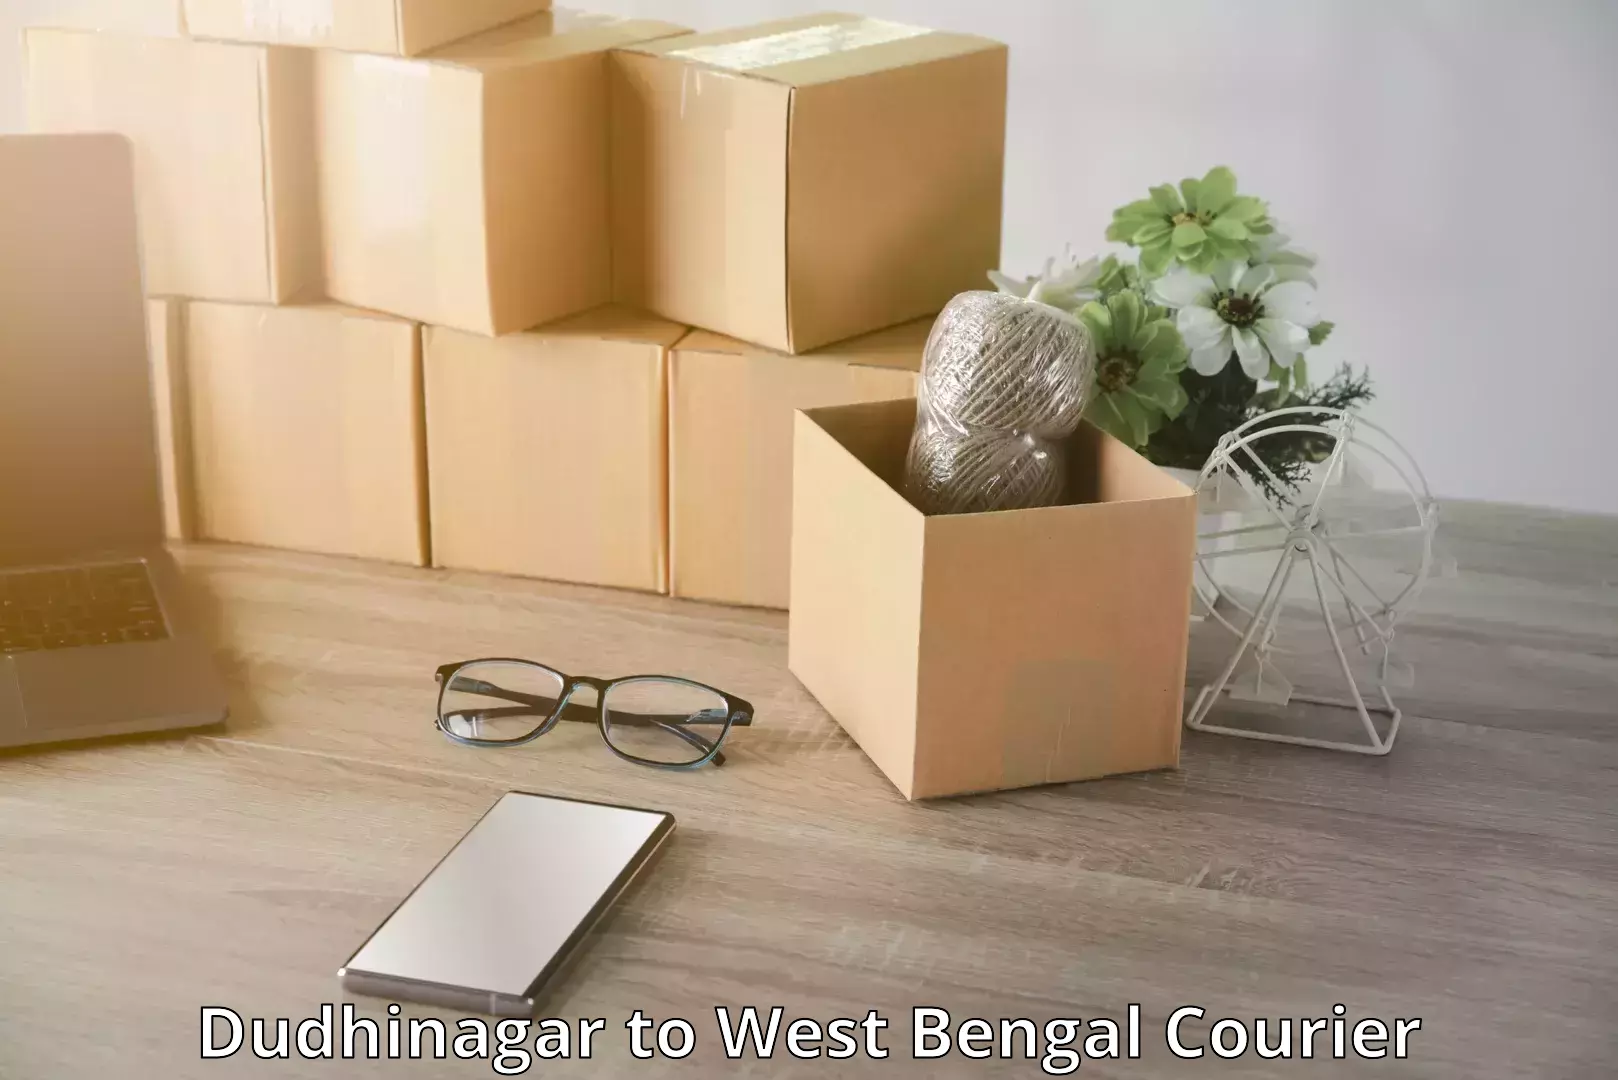 Luggage transit service Dudhinagar to West Bengal